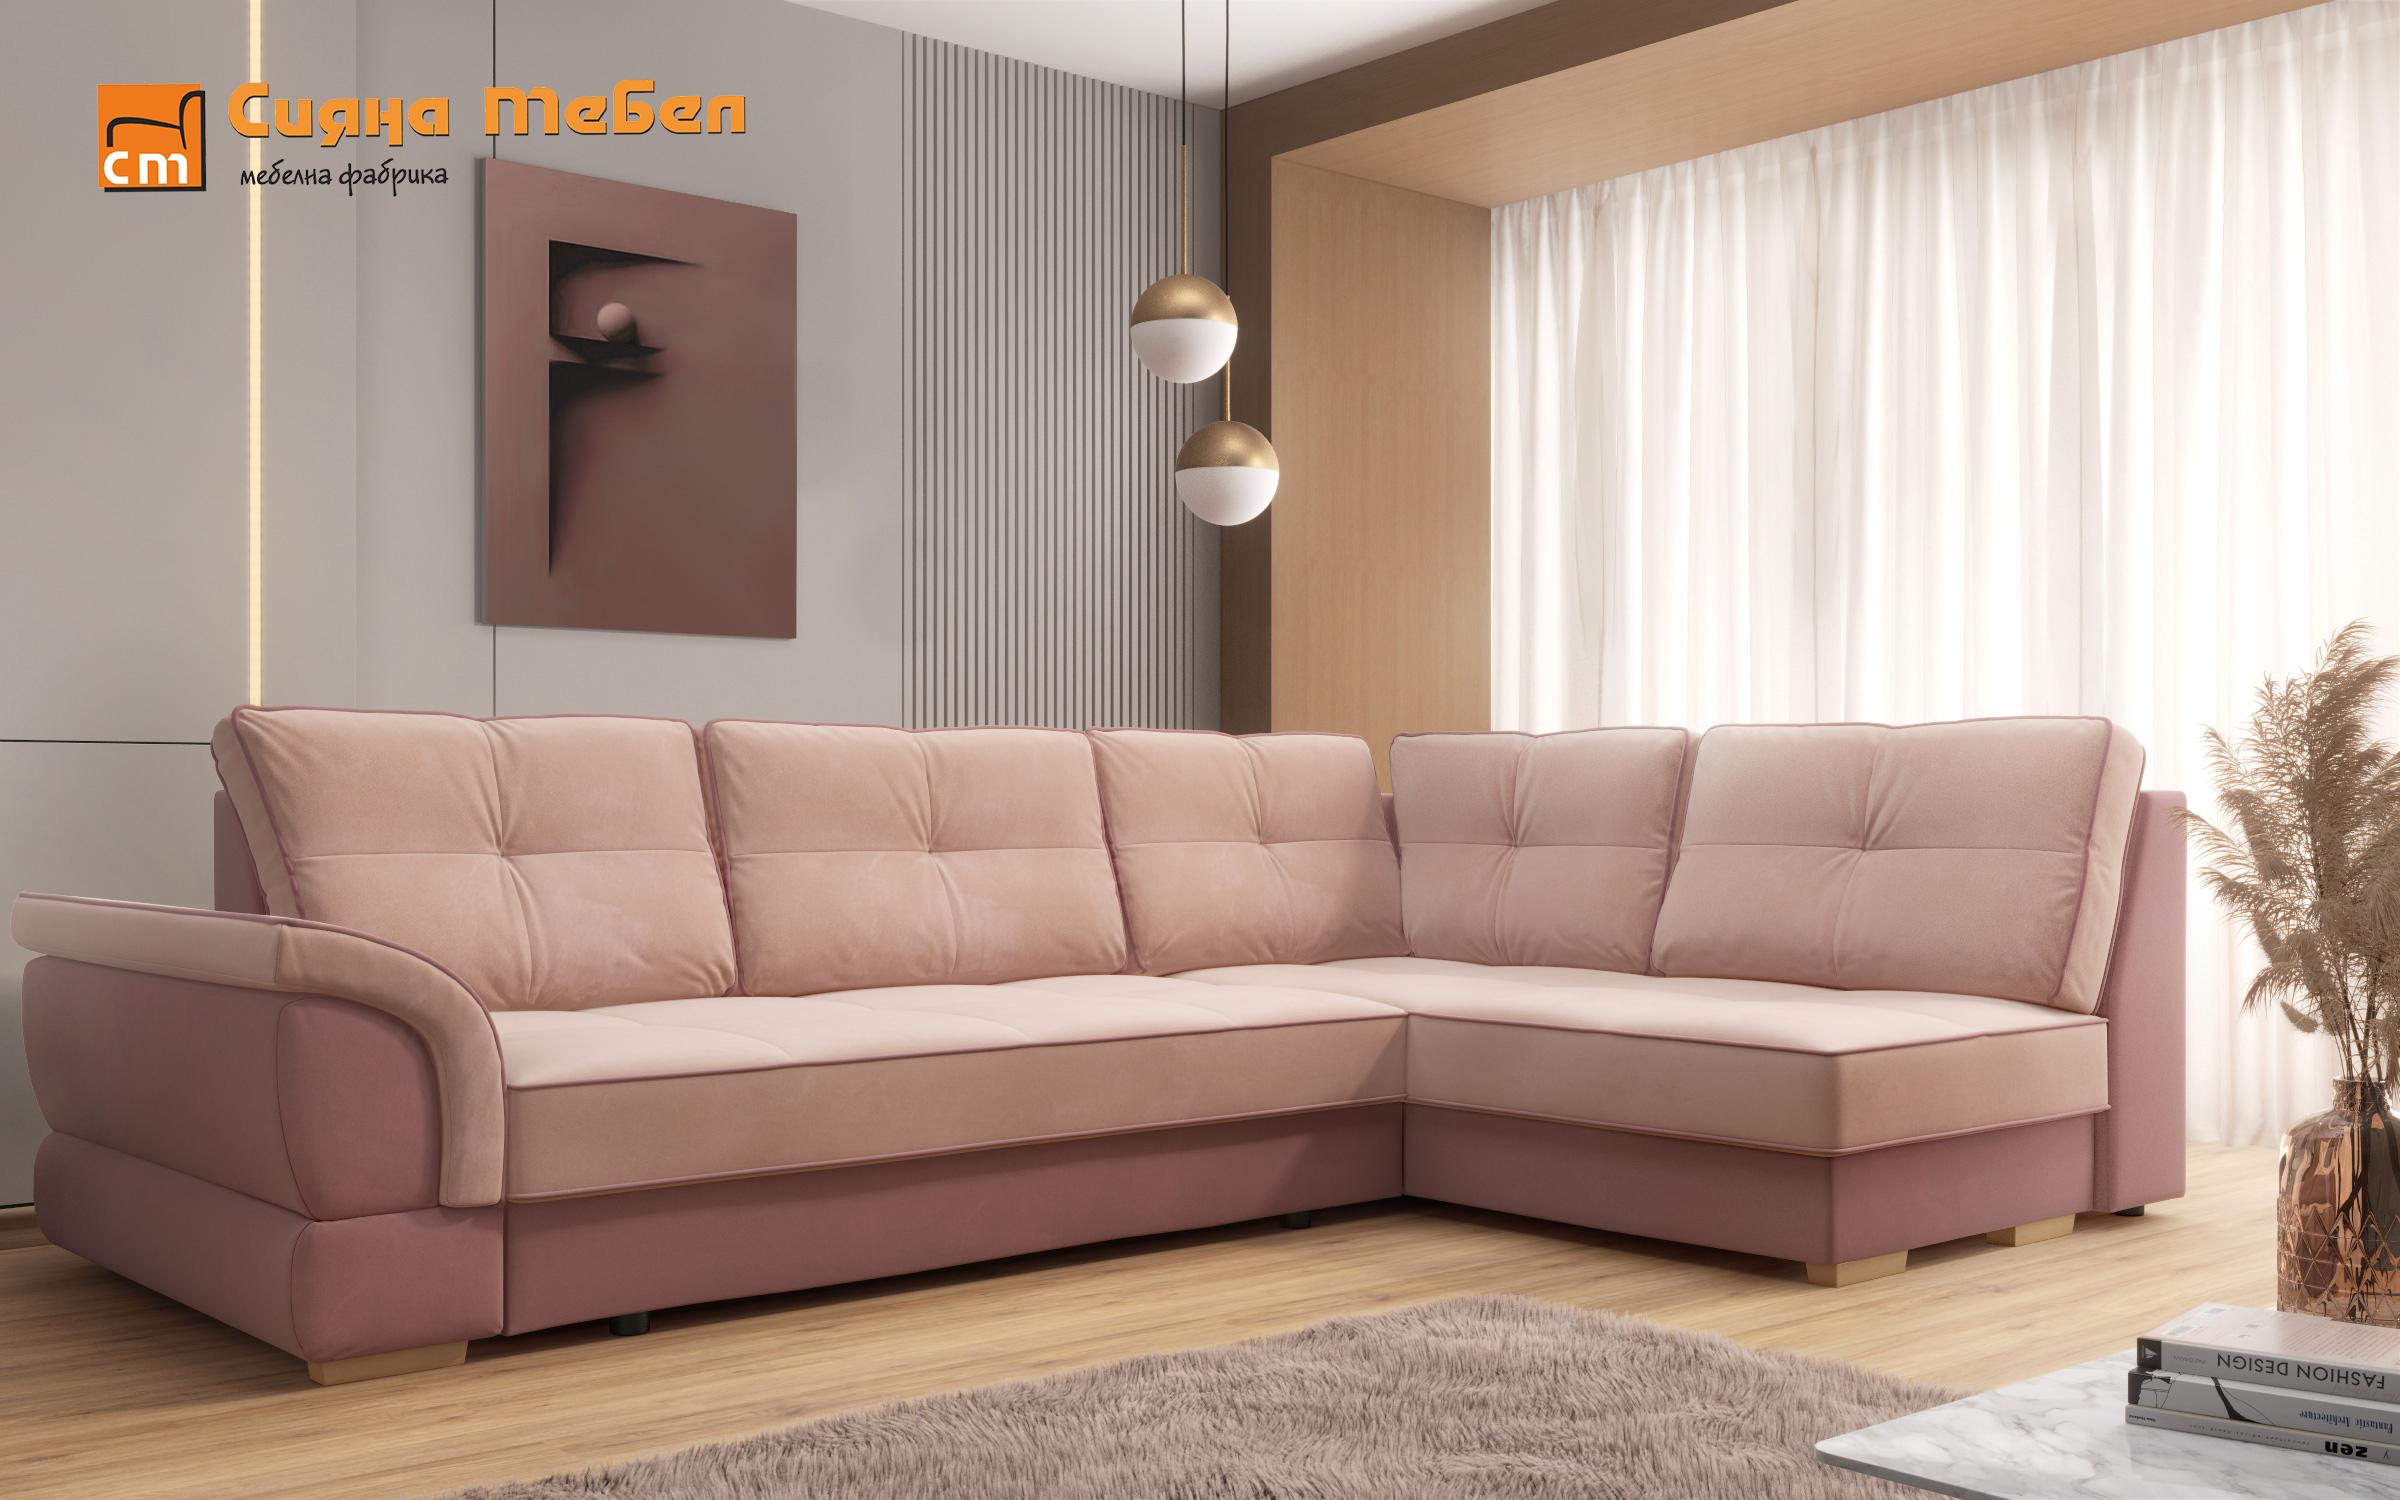 Γωνιακός καναπές Next, ροζ + ανοιχτό ροζ  3